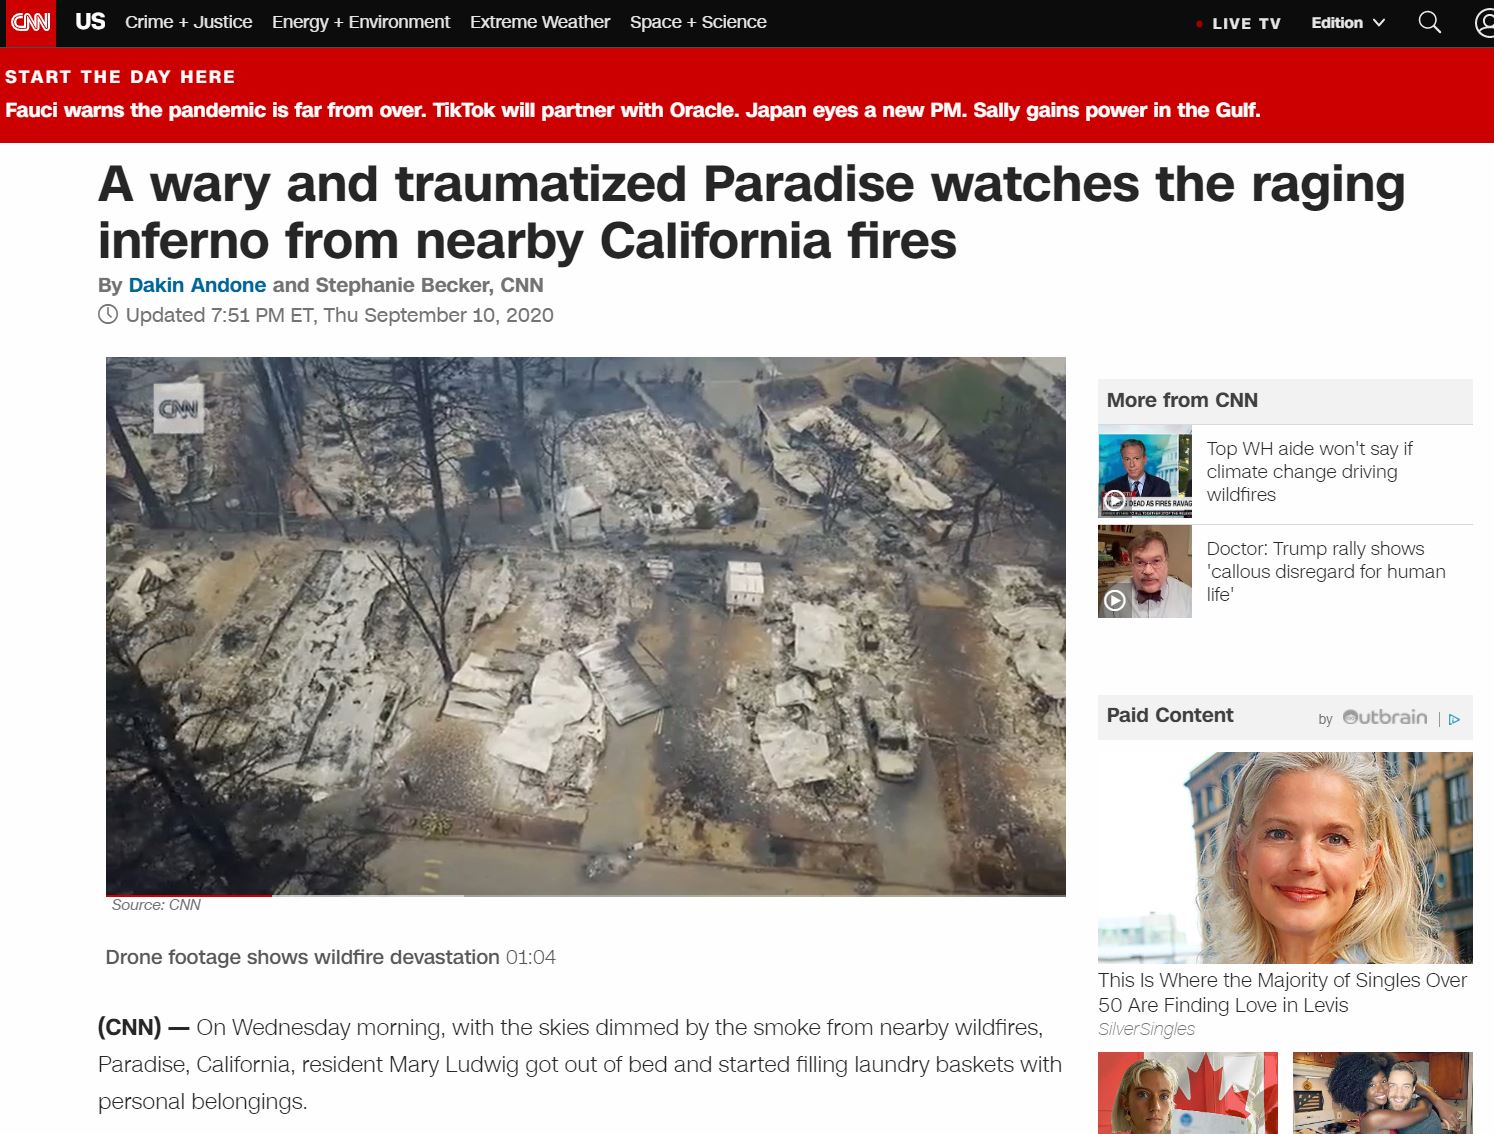 ville-de-paradise-rasee-par-les-flames-en-californie-en-sept-2020.JPG